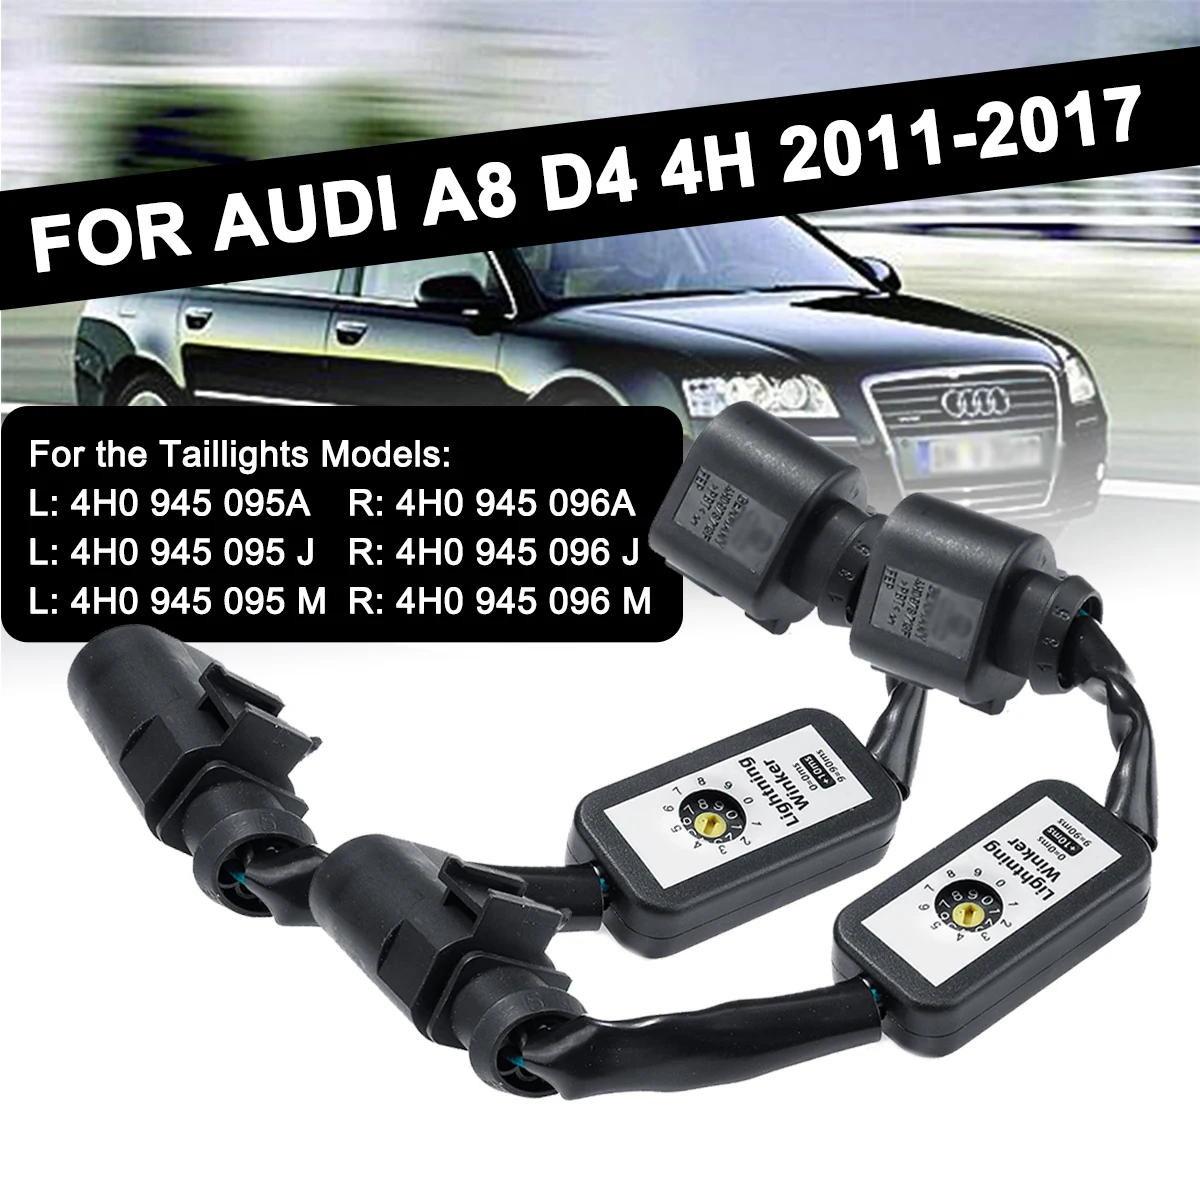 

2 шт. динамический сигнал поворота надстройку провод модуля жгут светодиодный фонарь светильник индикатор для Audi A8 D4 4H 2011-2017 левый и правый х...